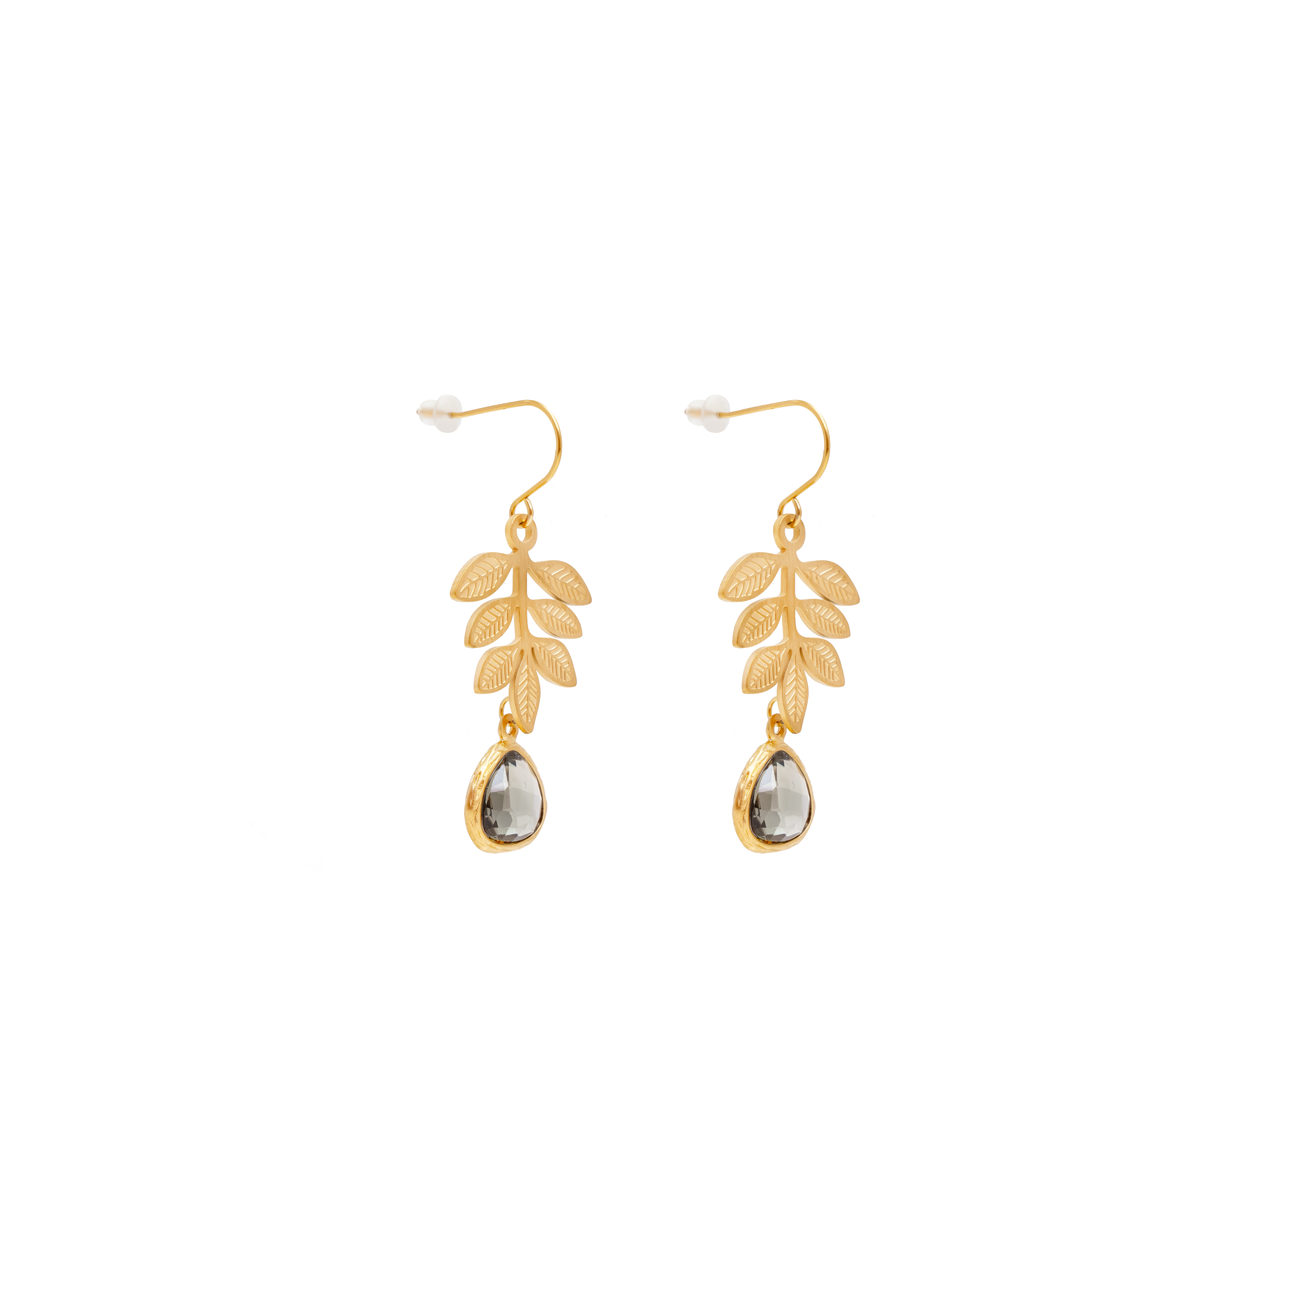 Paula floral earrings, Charcoal